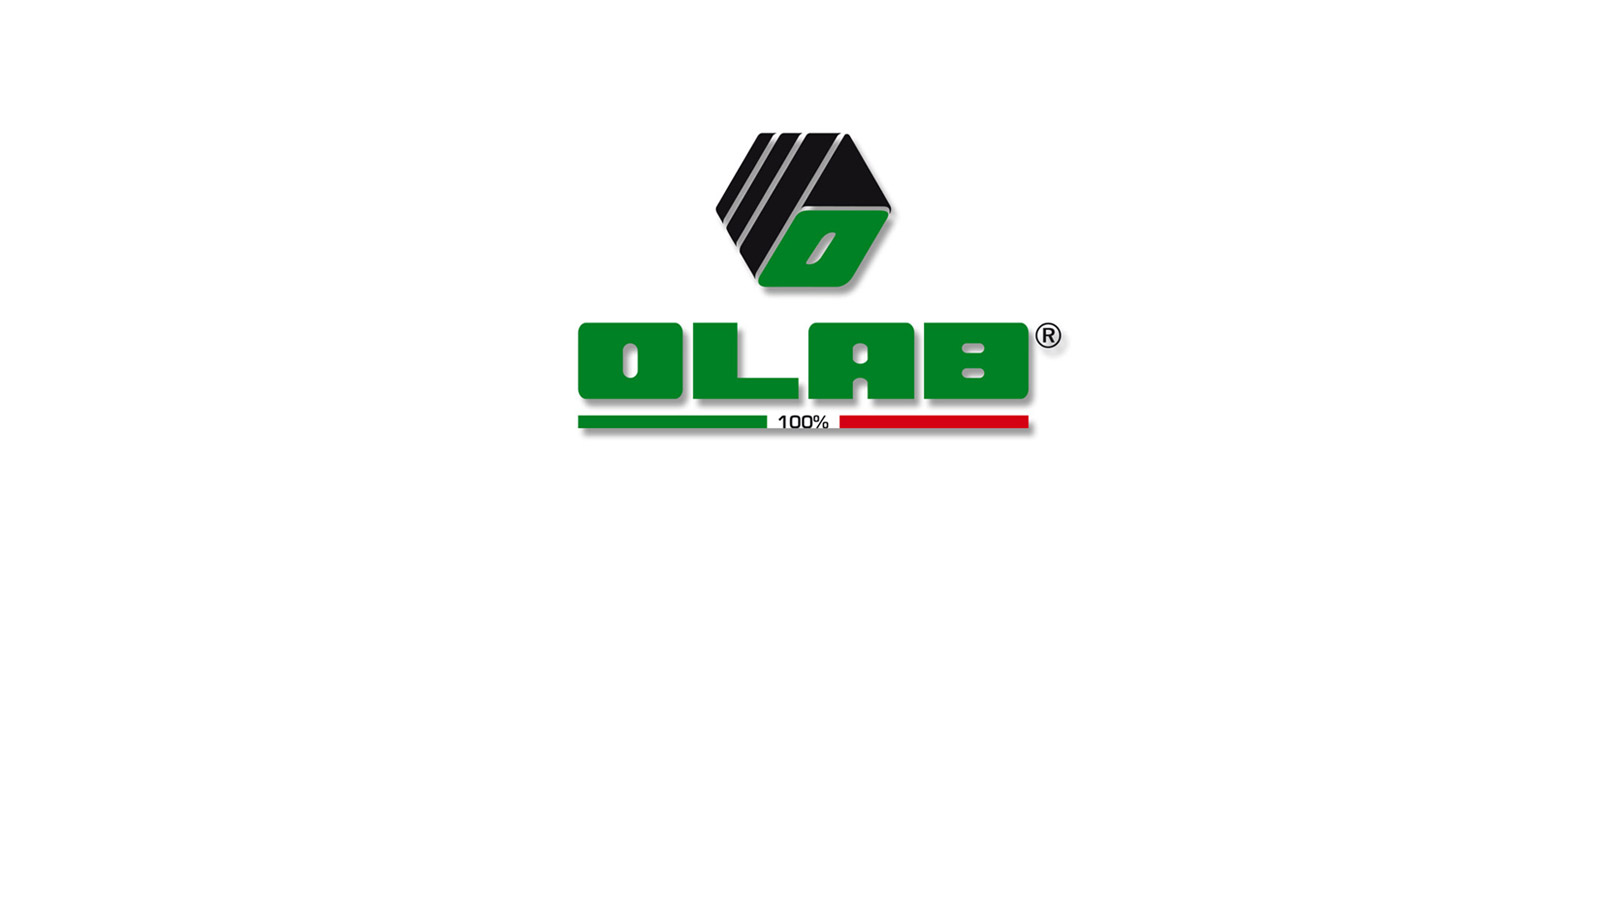 Olab logo